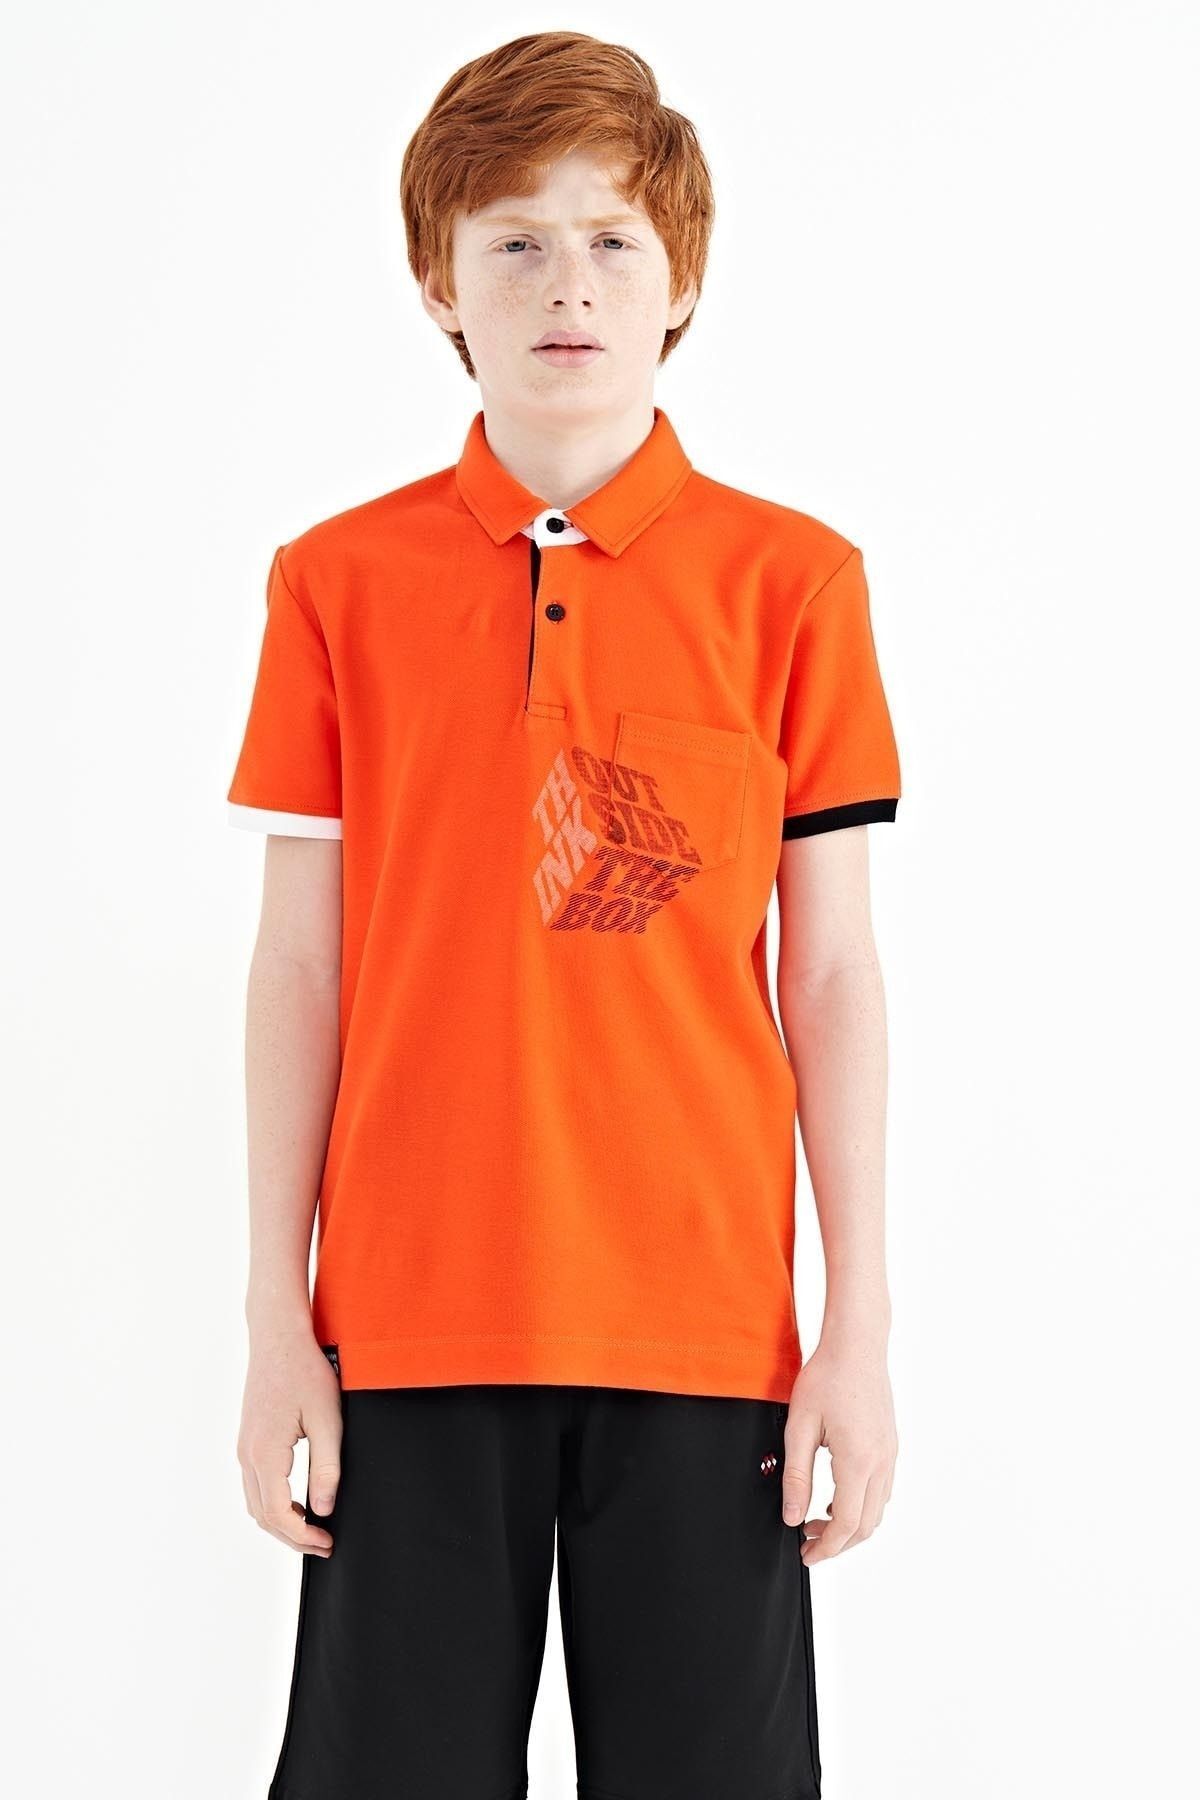 TOMMY LIFE Portakal Ön Cep Detaylı Baskılı Standart Kalıp Polo Yaka Erkek Çocuk T-Shirt - 11102